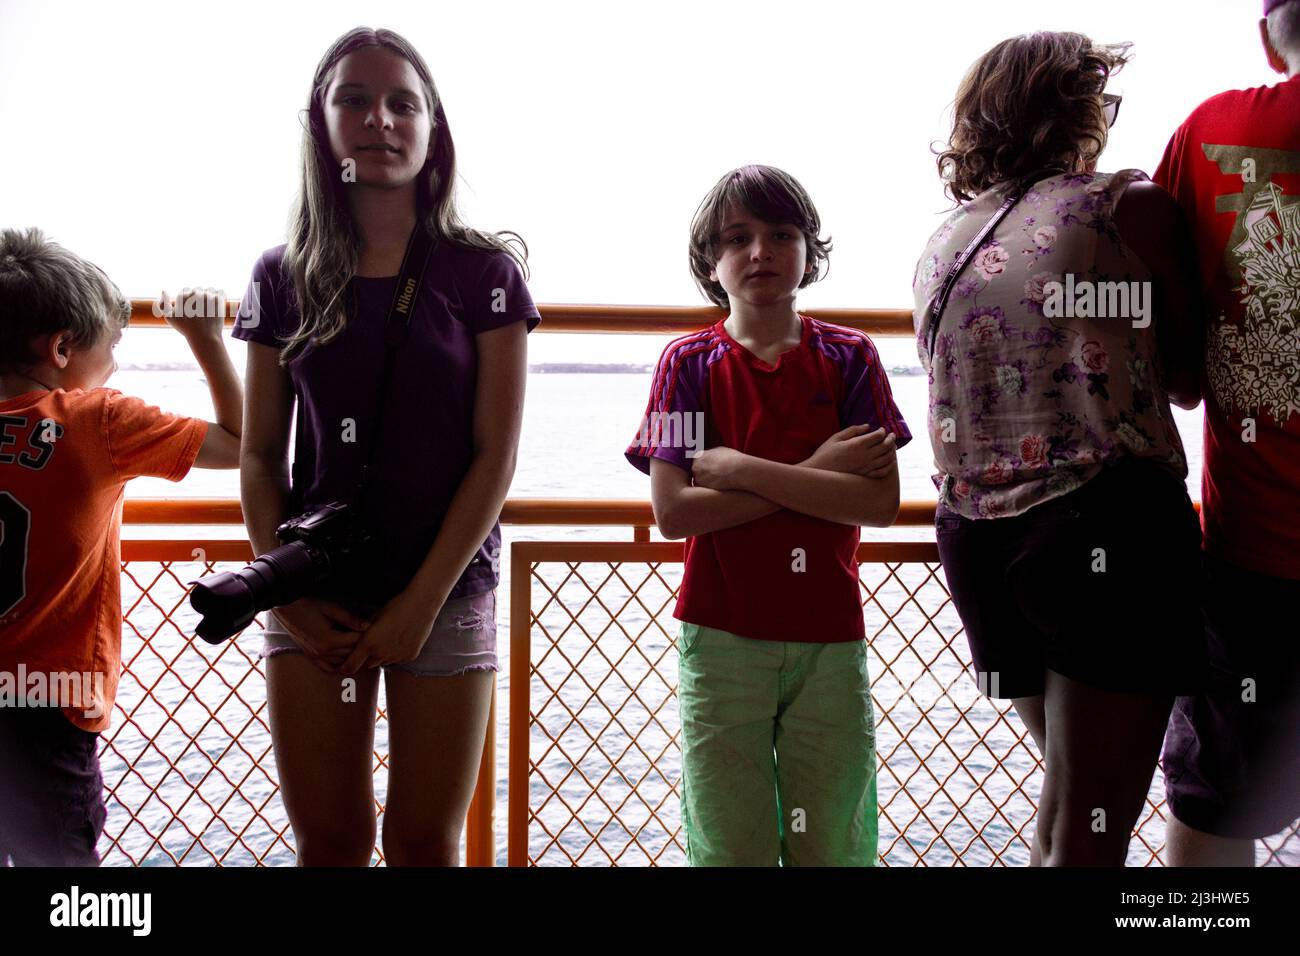 New York City, NY, USA, 14 Jahre altes kaukasisches Teenager-Mädchen und 12 Jahre altes kaukasisches Teenager-Mädchen – beide mit braunen Haaren und sommerlichem Styling auf der staten Island Ferry. Stockfoto